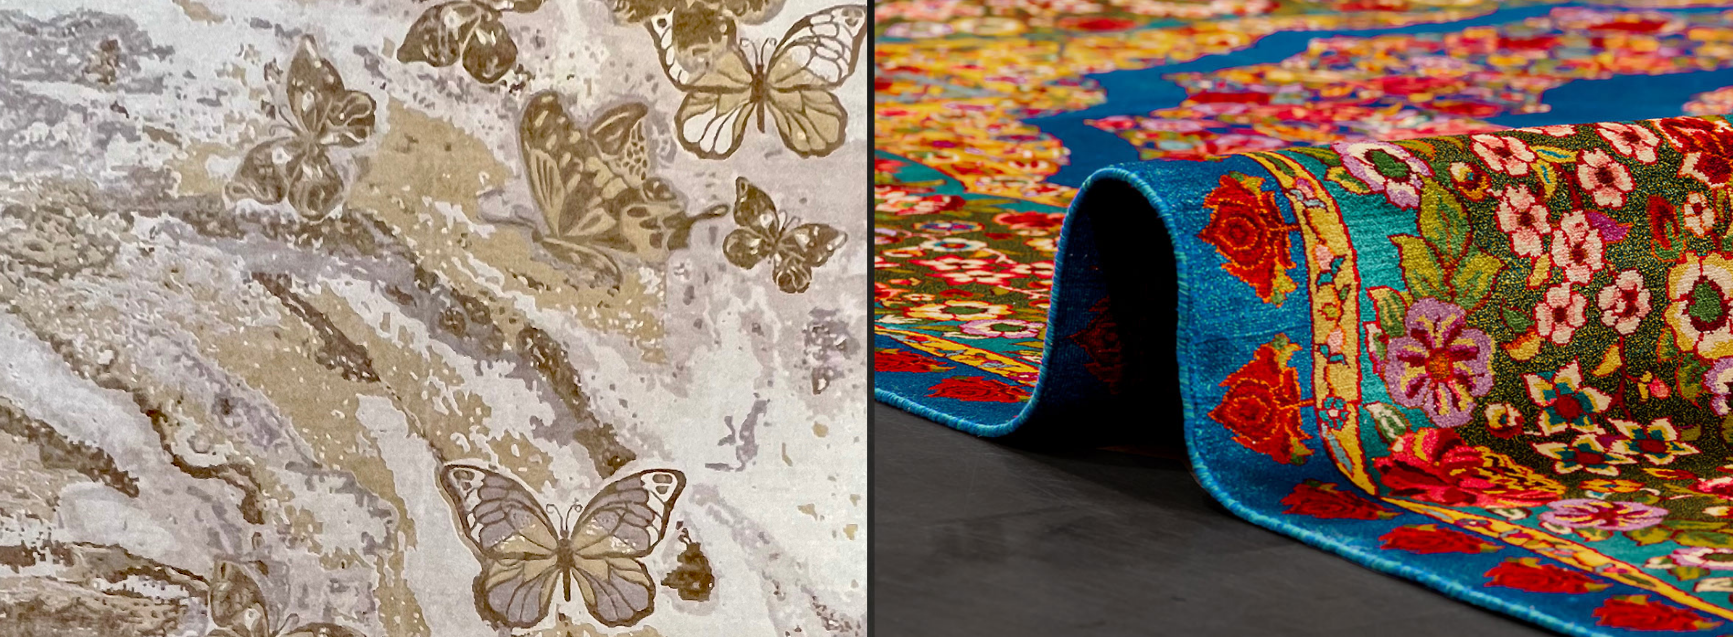 butterfly rug next to a kashmir silk rug